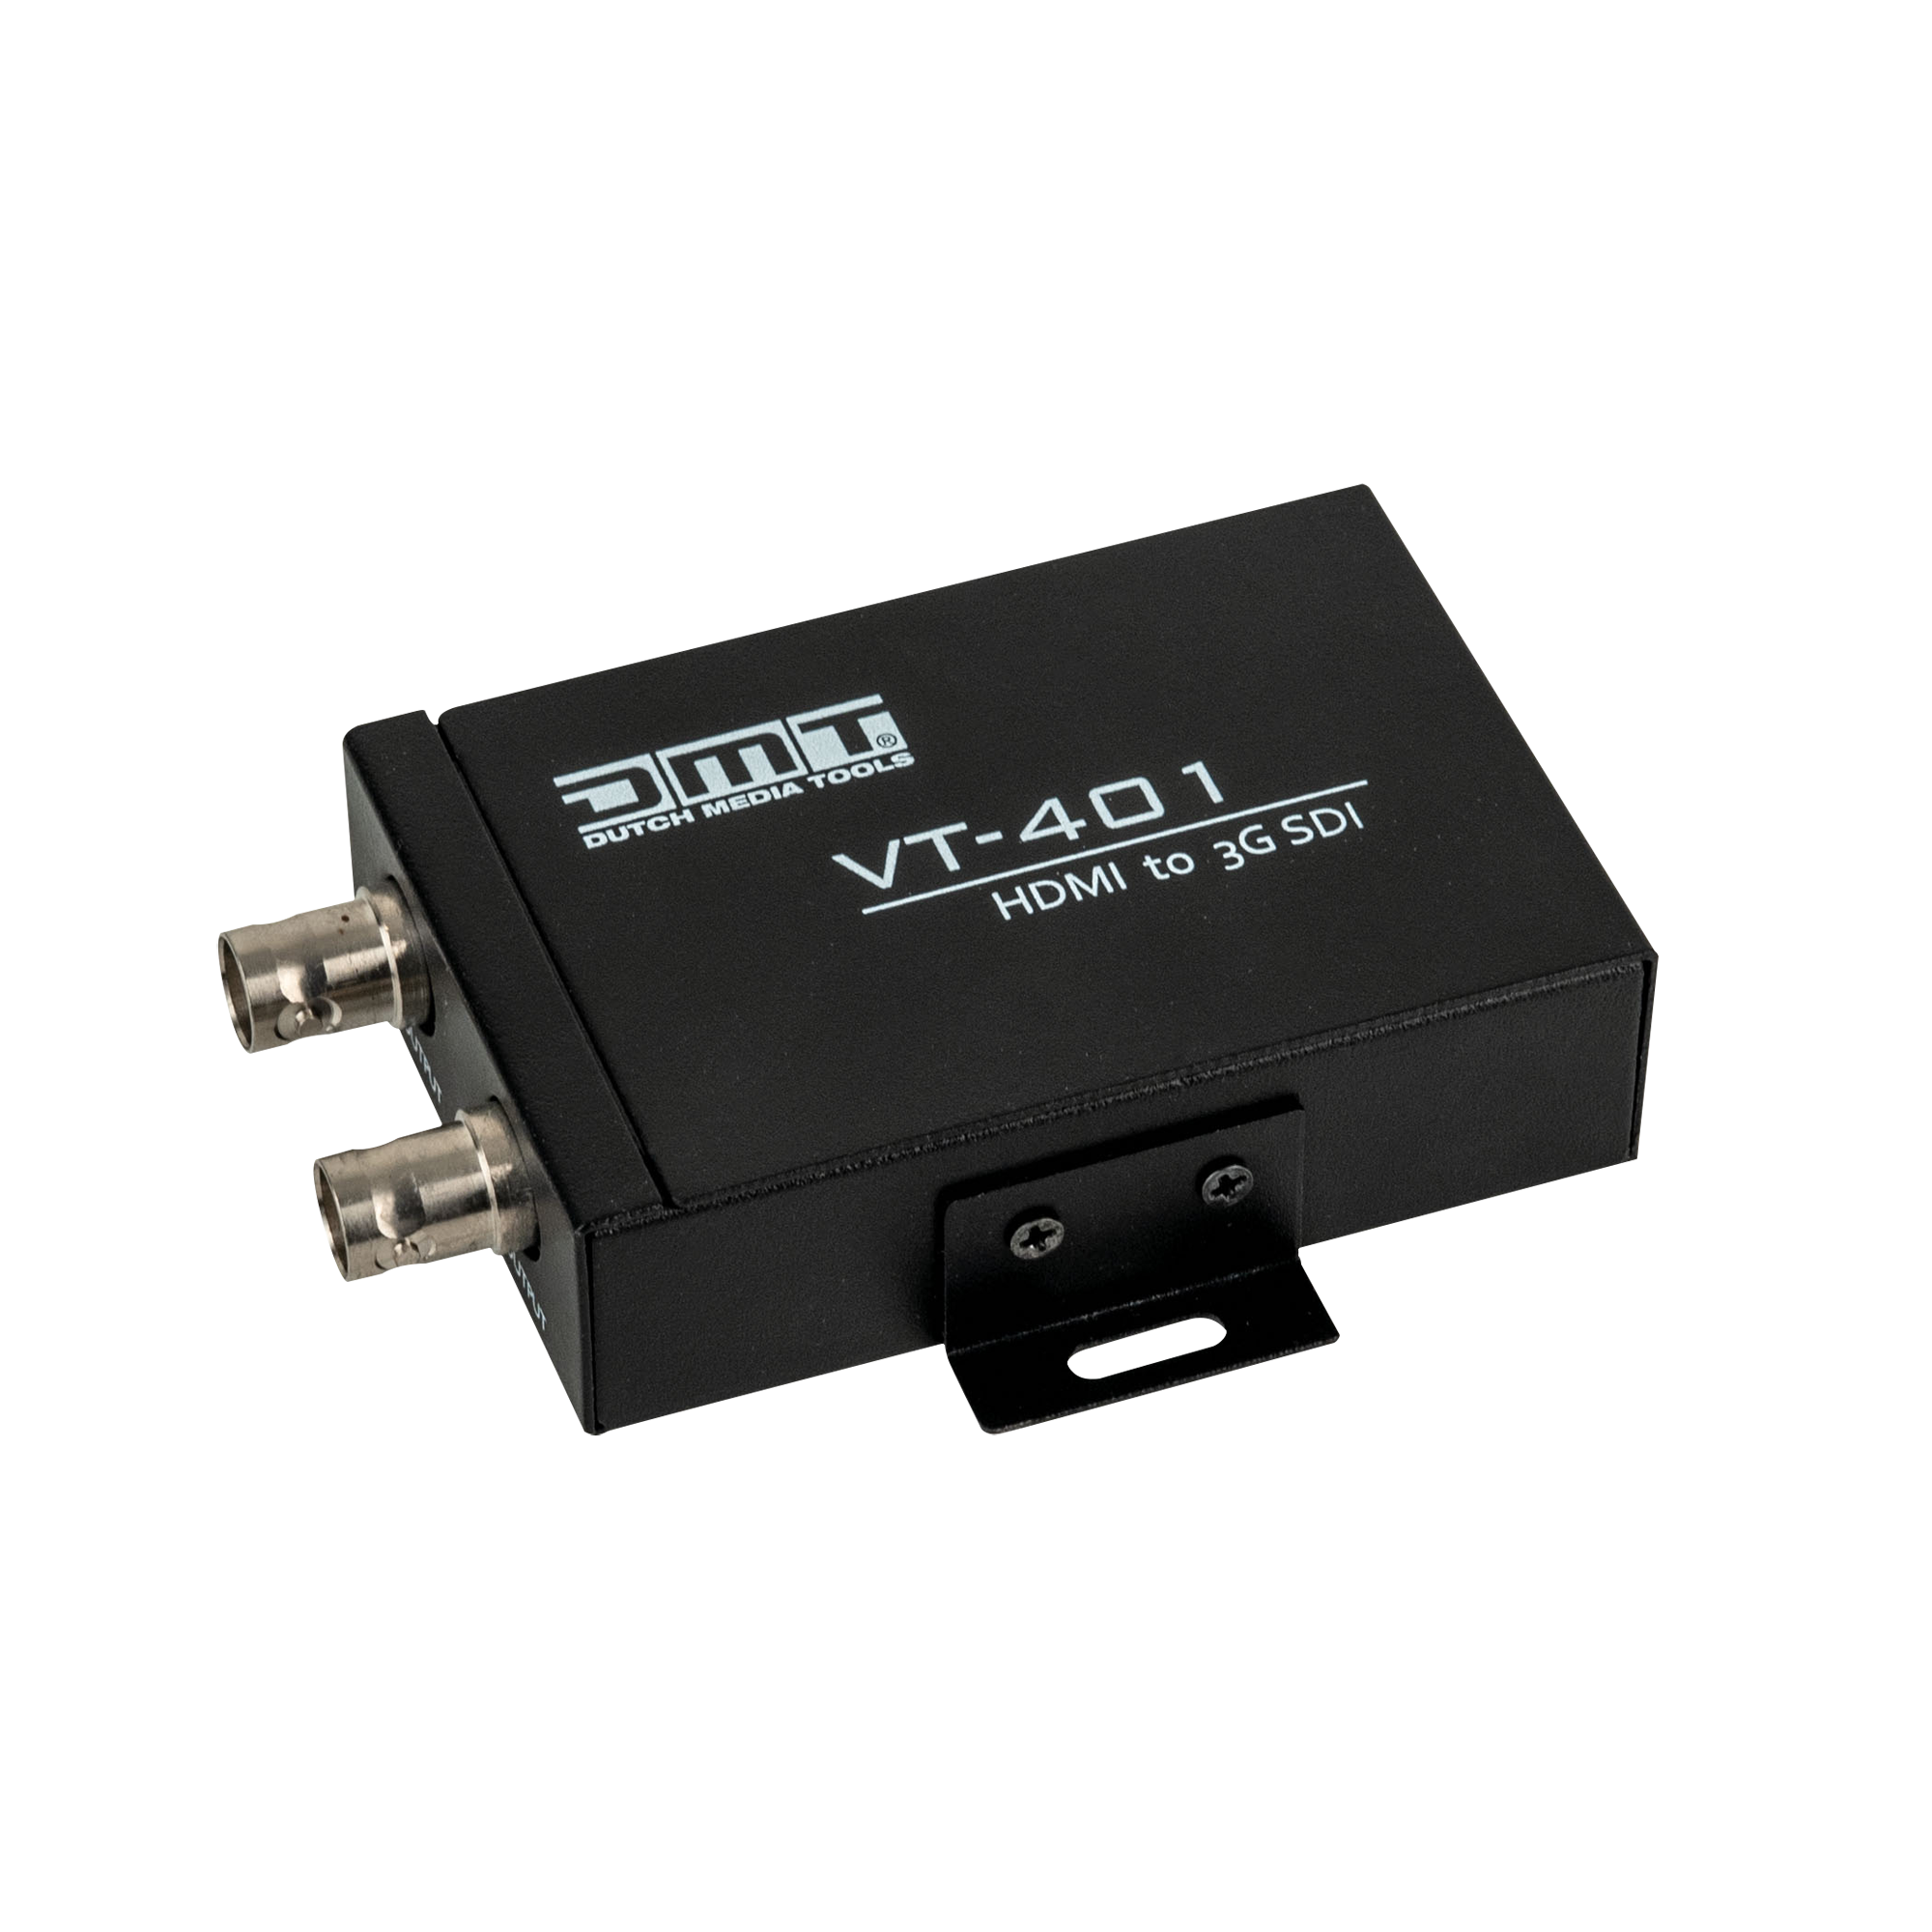 DMT VT 401 - HDMI to 3G-SDI converter Kompakt